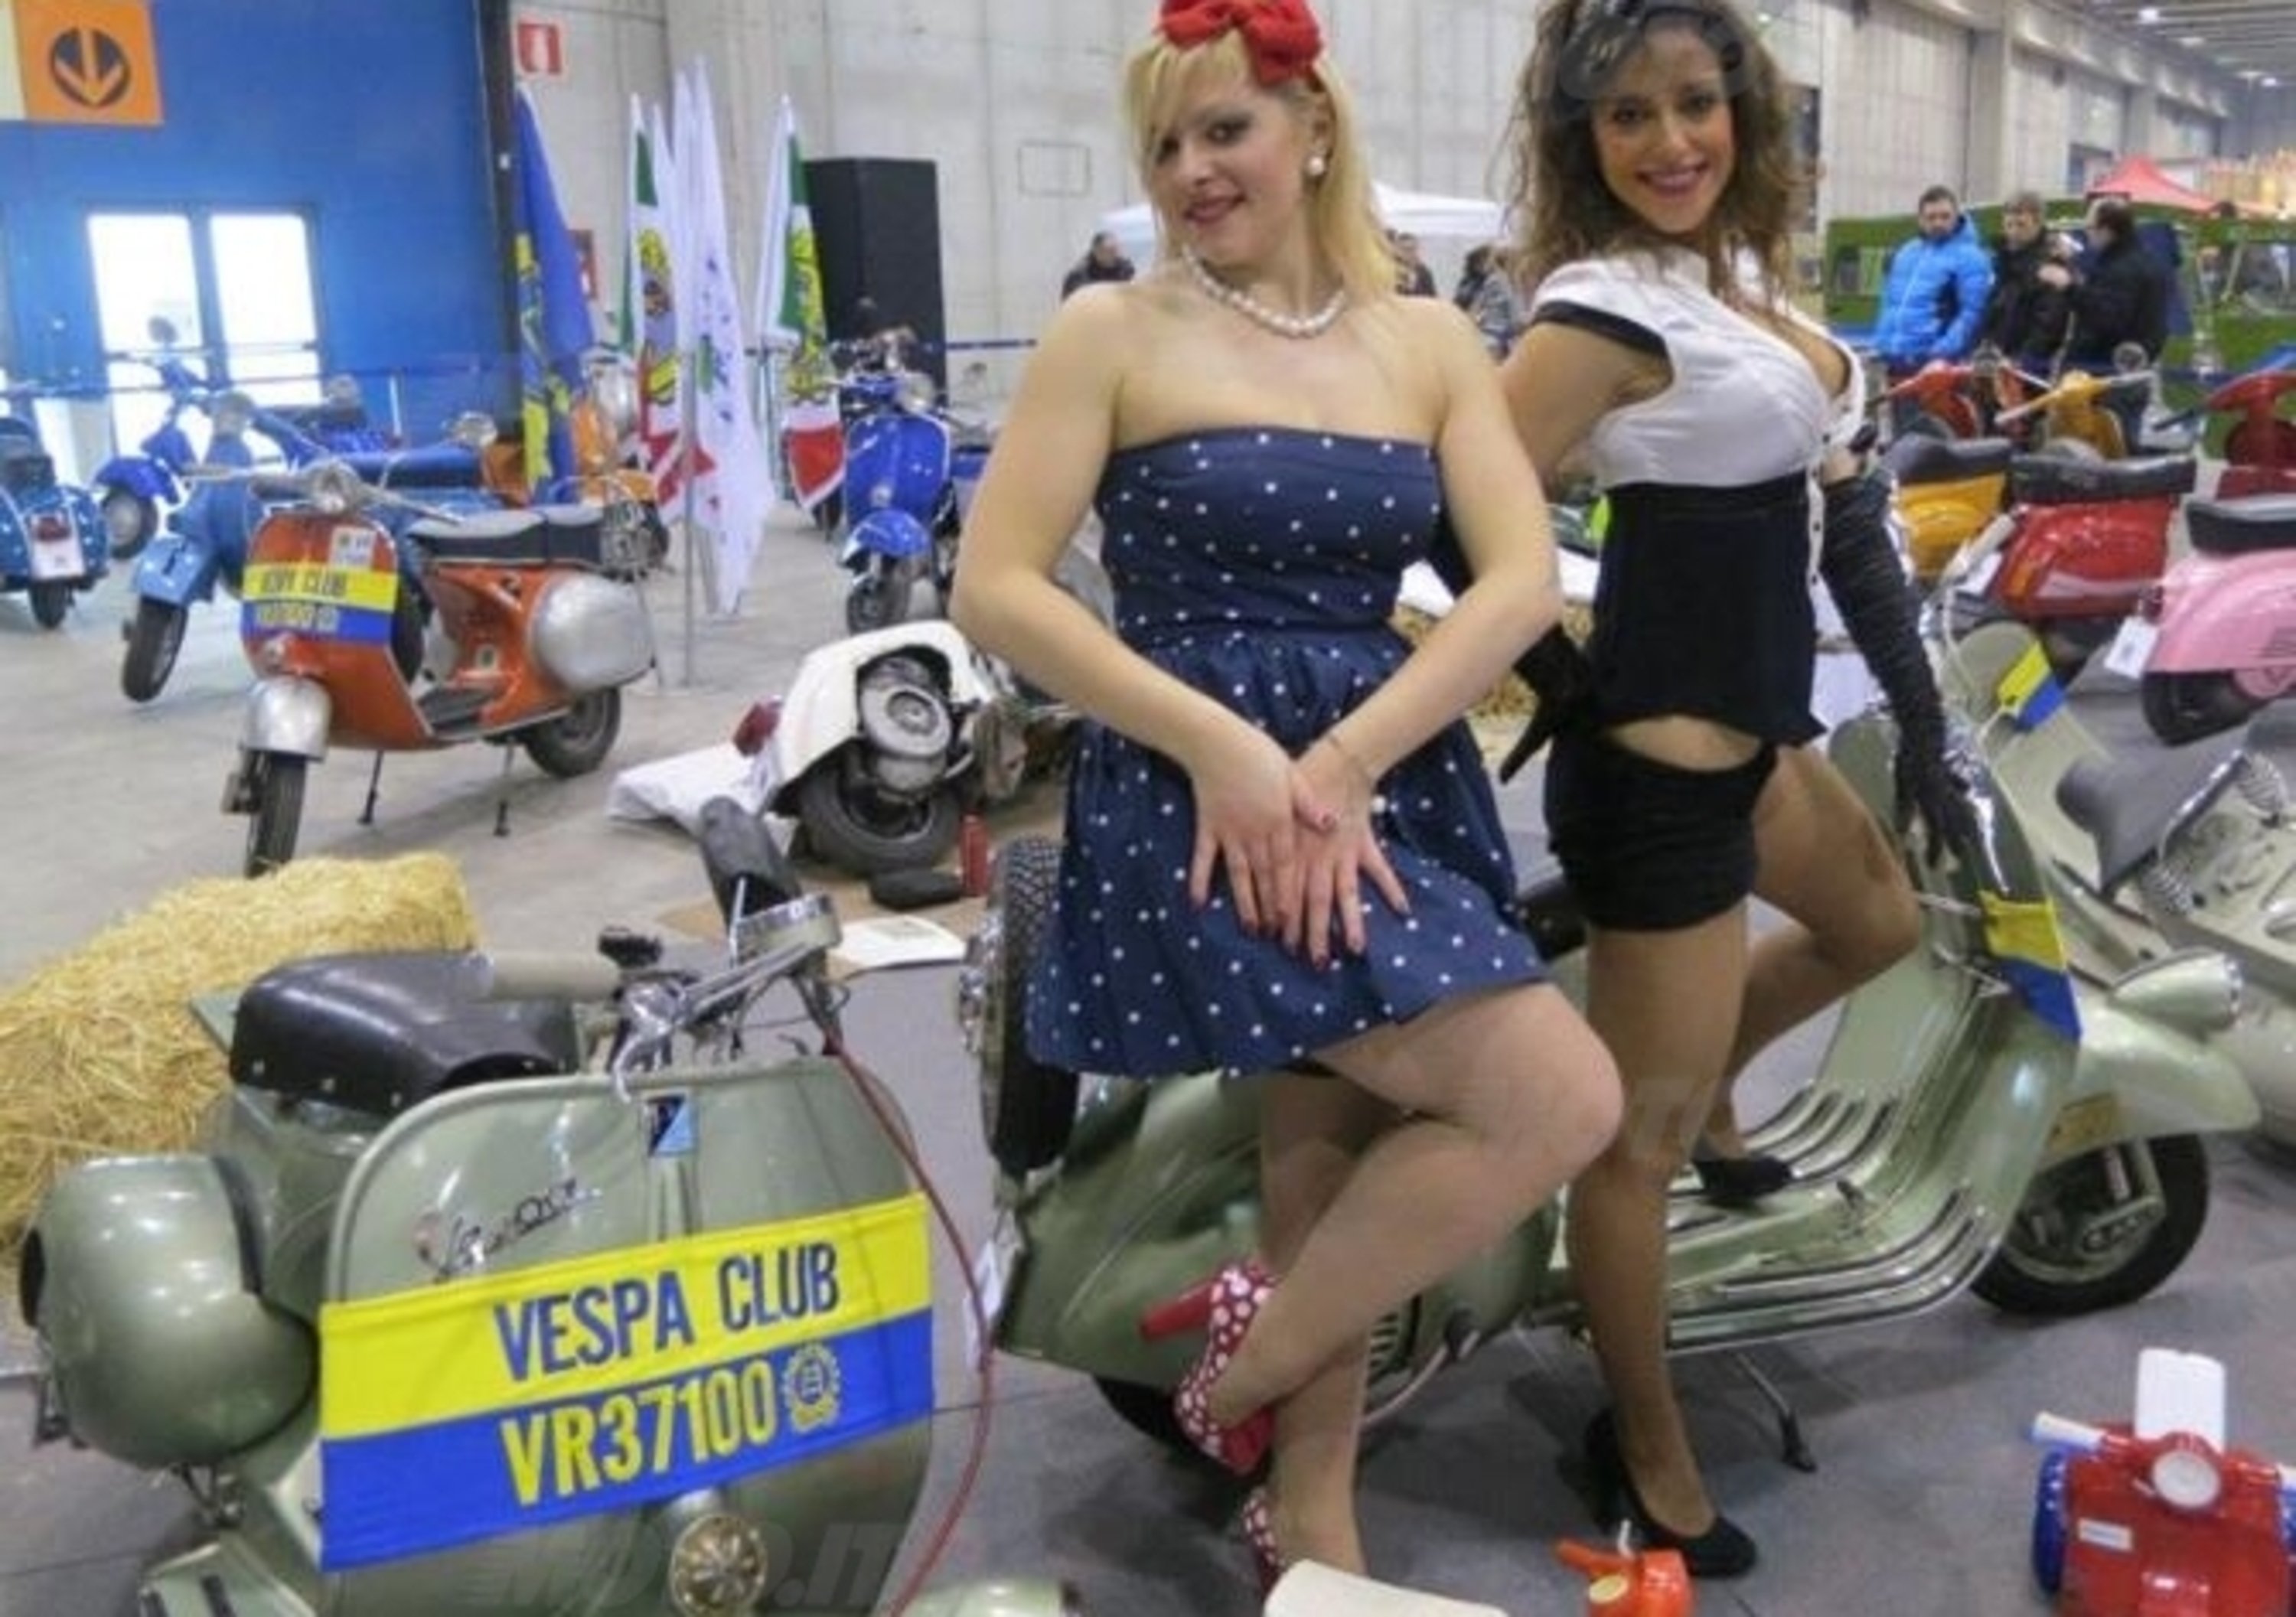 Le foto pi&ugrave; divertenti del Motor Bike Expo 2013 a Verona